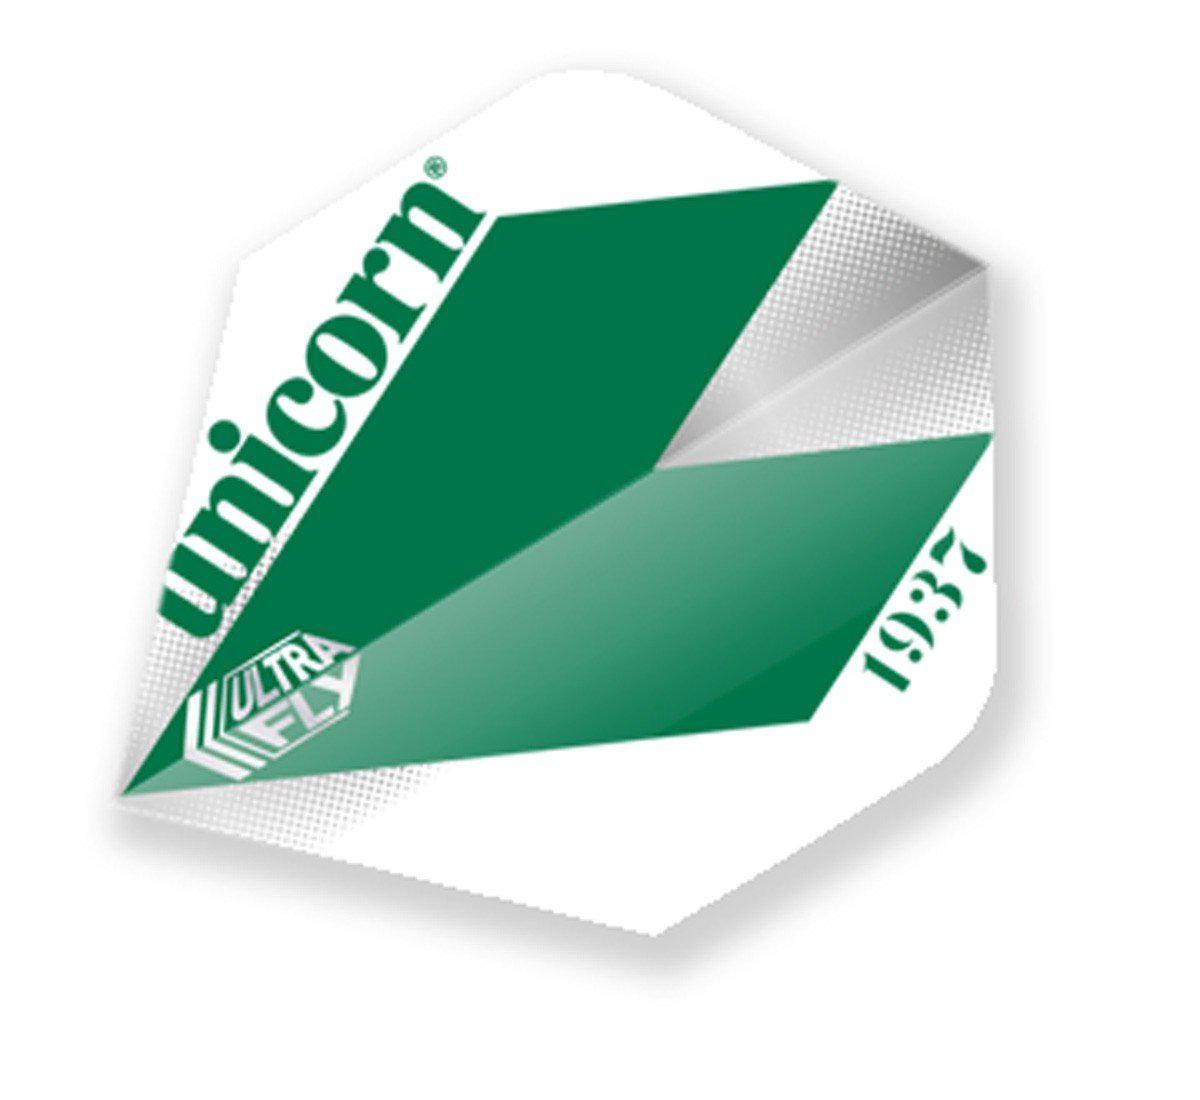 Unicorn Classic Big Wing Dart Flight - Comet Green-Dart Flights-Pro Sports